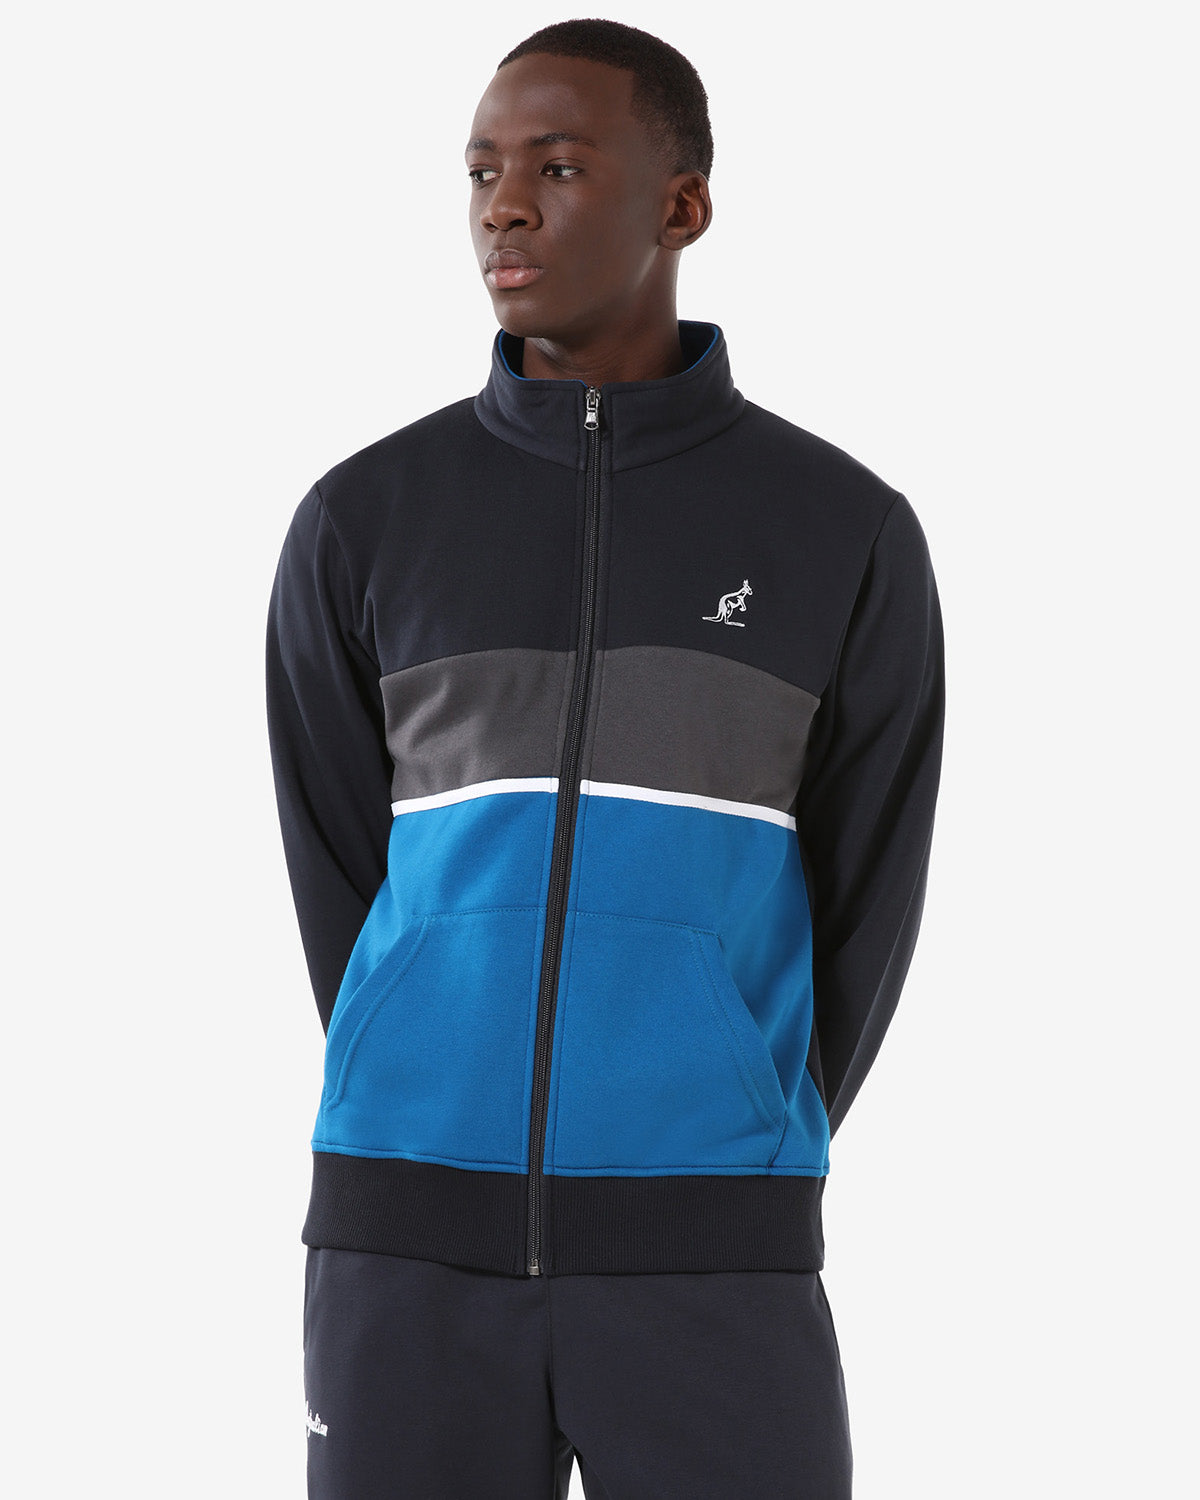 Winter Fleece Jacket: Australian Sportswear